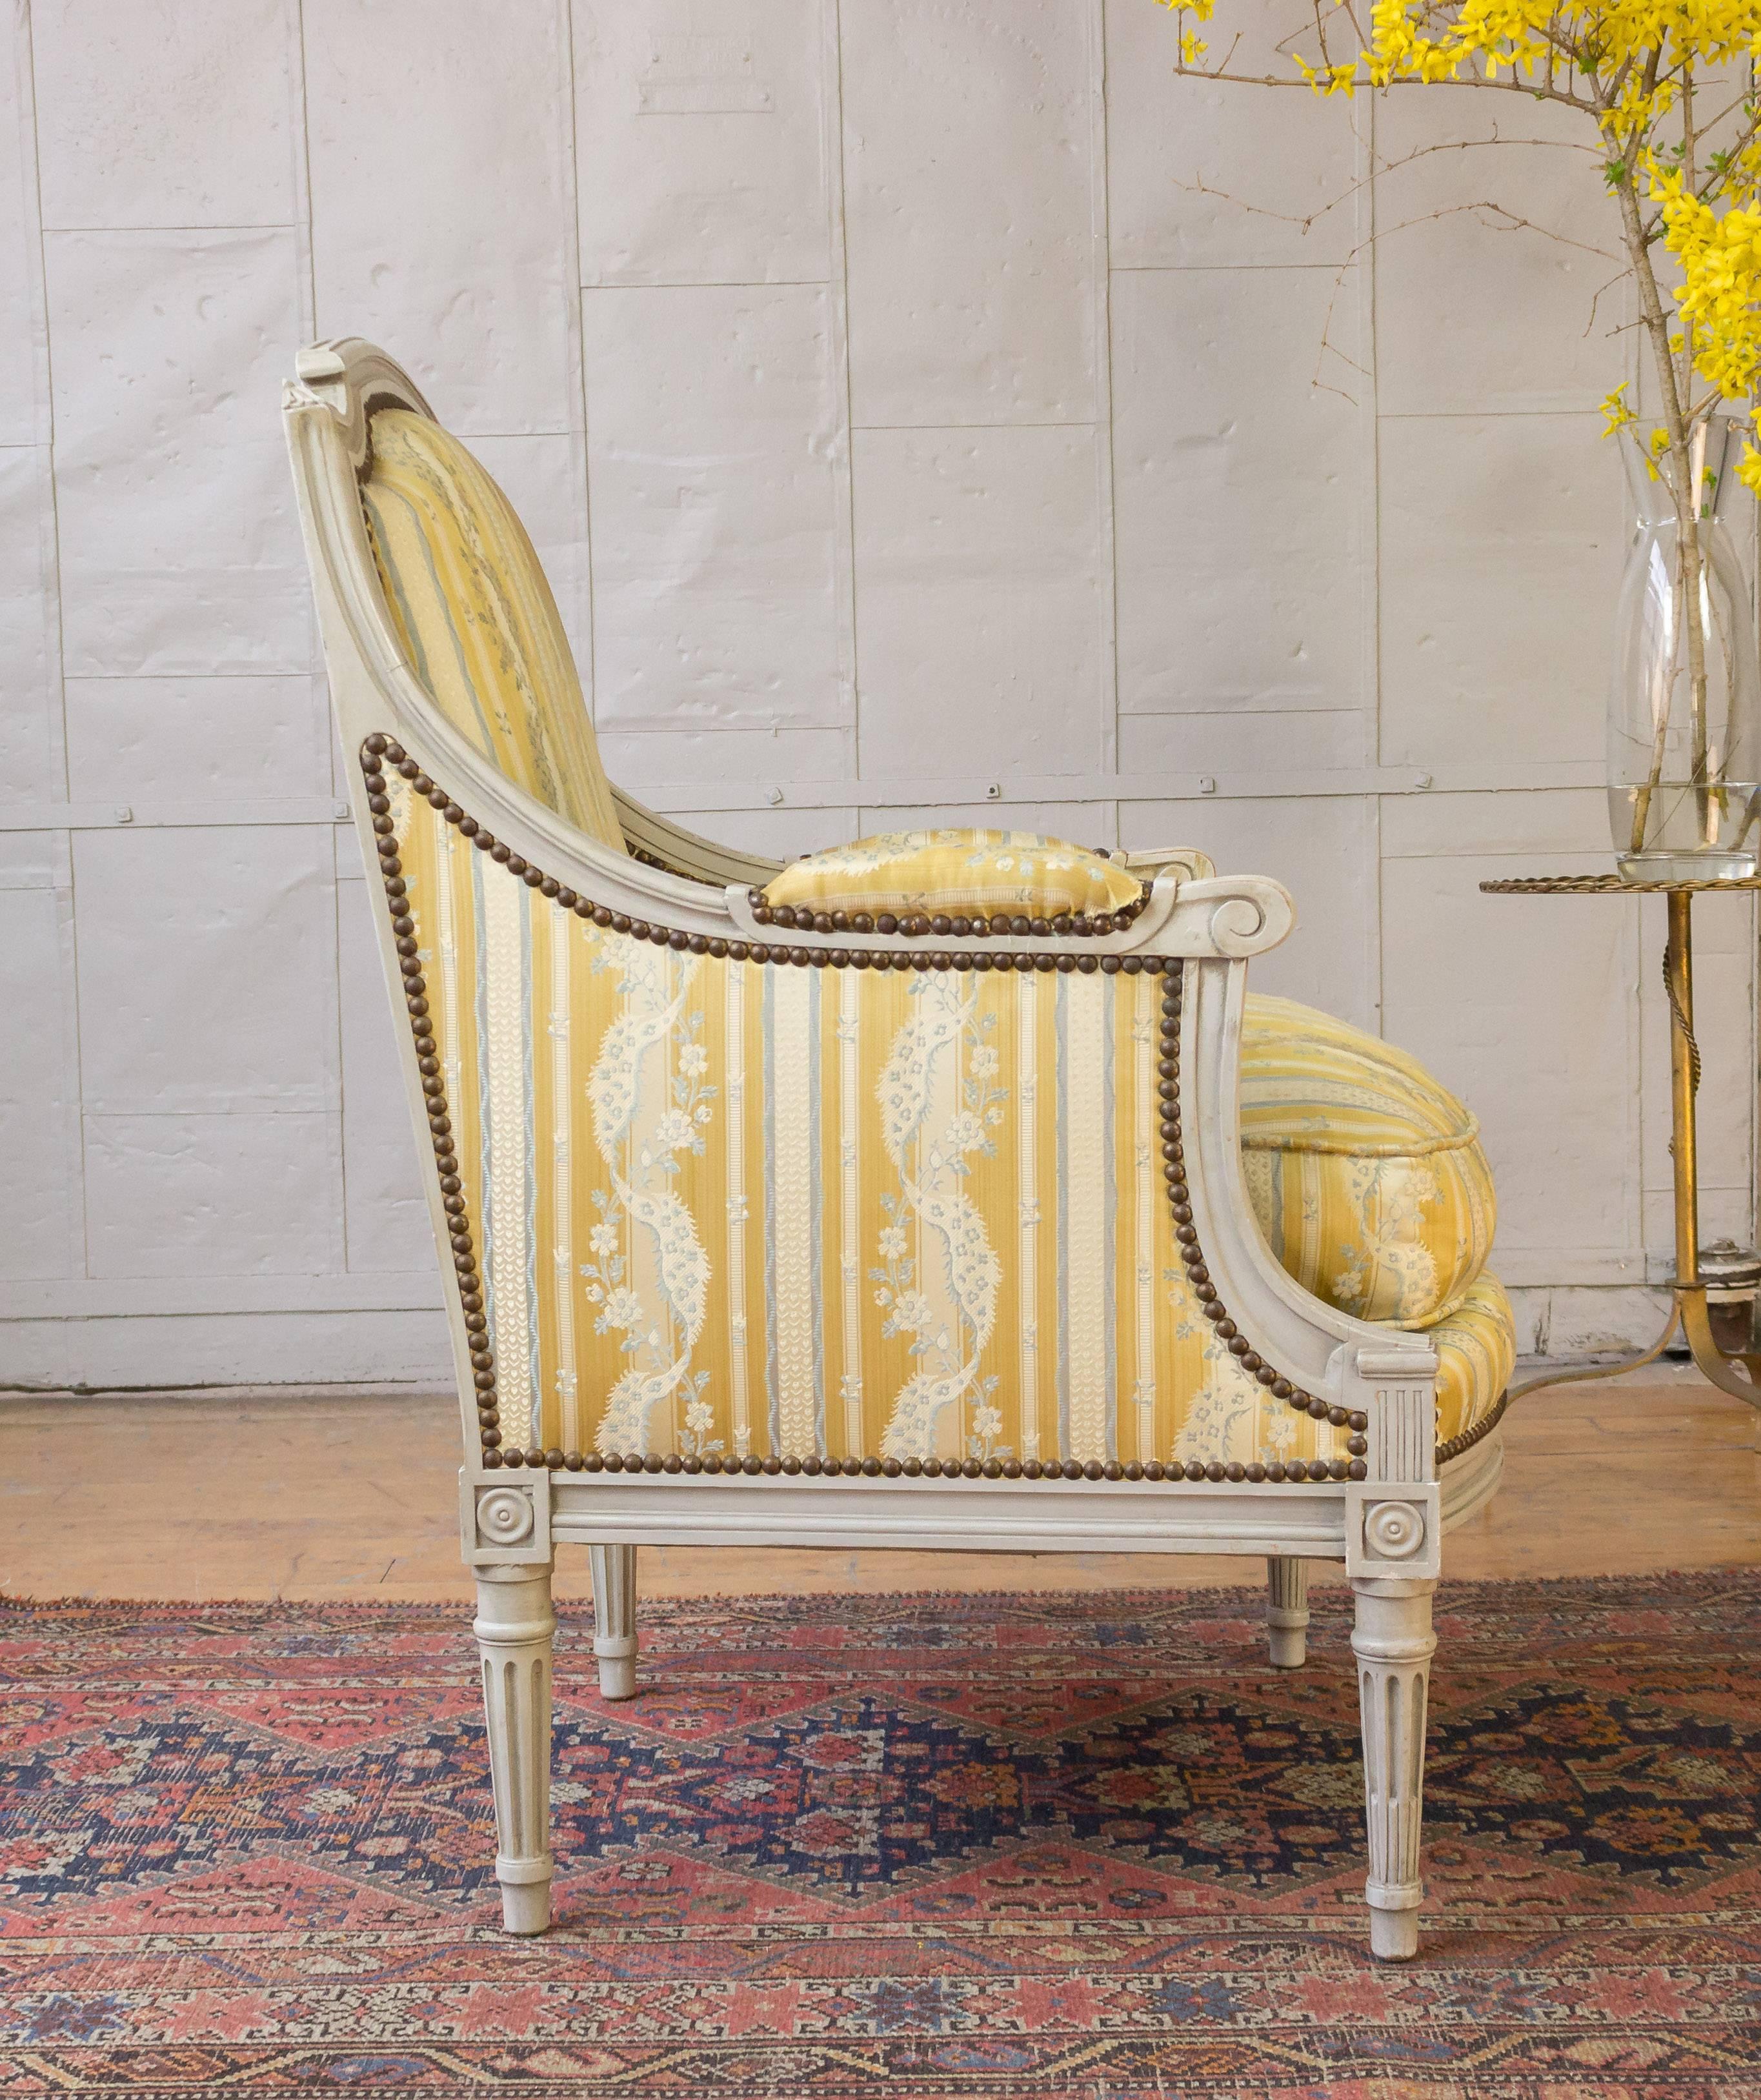 Ein raffiniertes Paar französischer Sessel im Louis-XVI-Stil. Dieses exquisite Paar französischer Louis-XVI-Sessel ist eine wunderbare Ergänzung für jedes Haus. Diese Stühle mit ihren grauen, patinierten und geschnitzten Holzrahmen haben ein